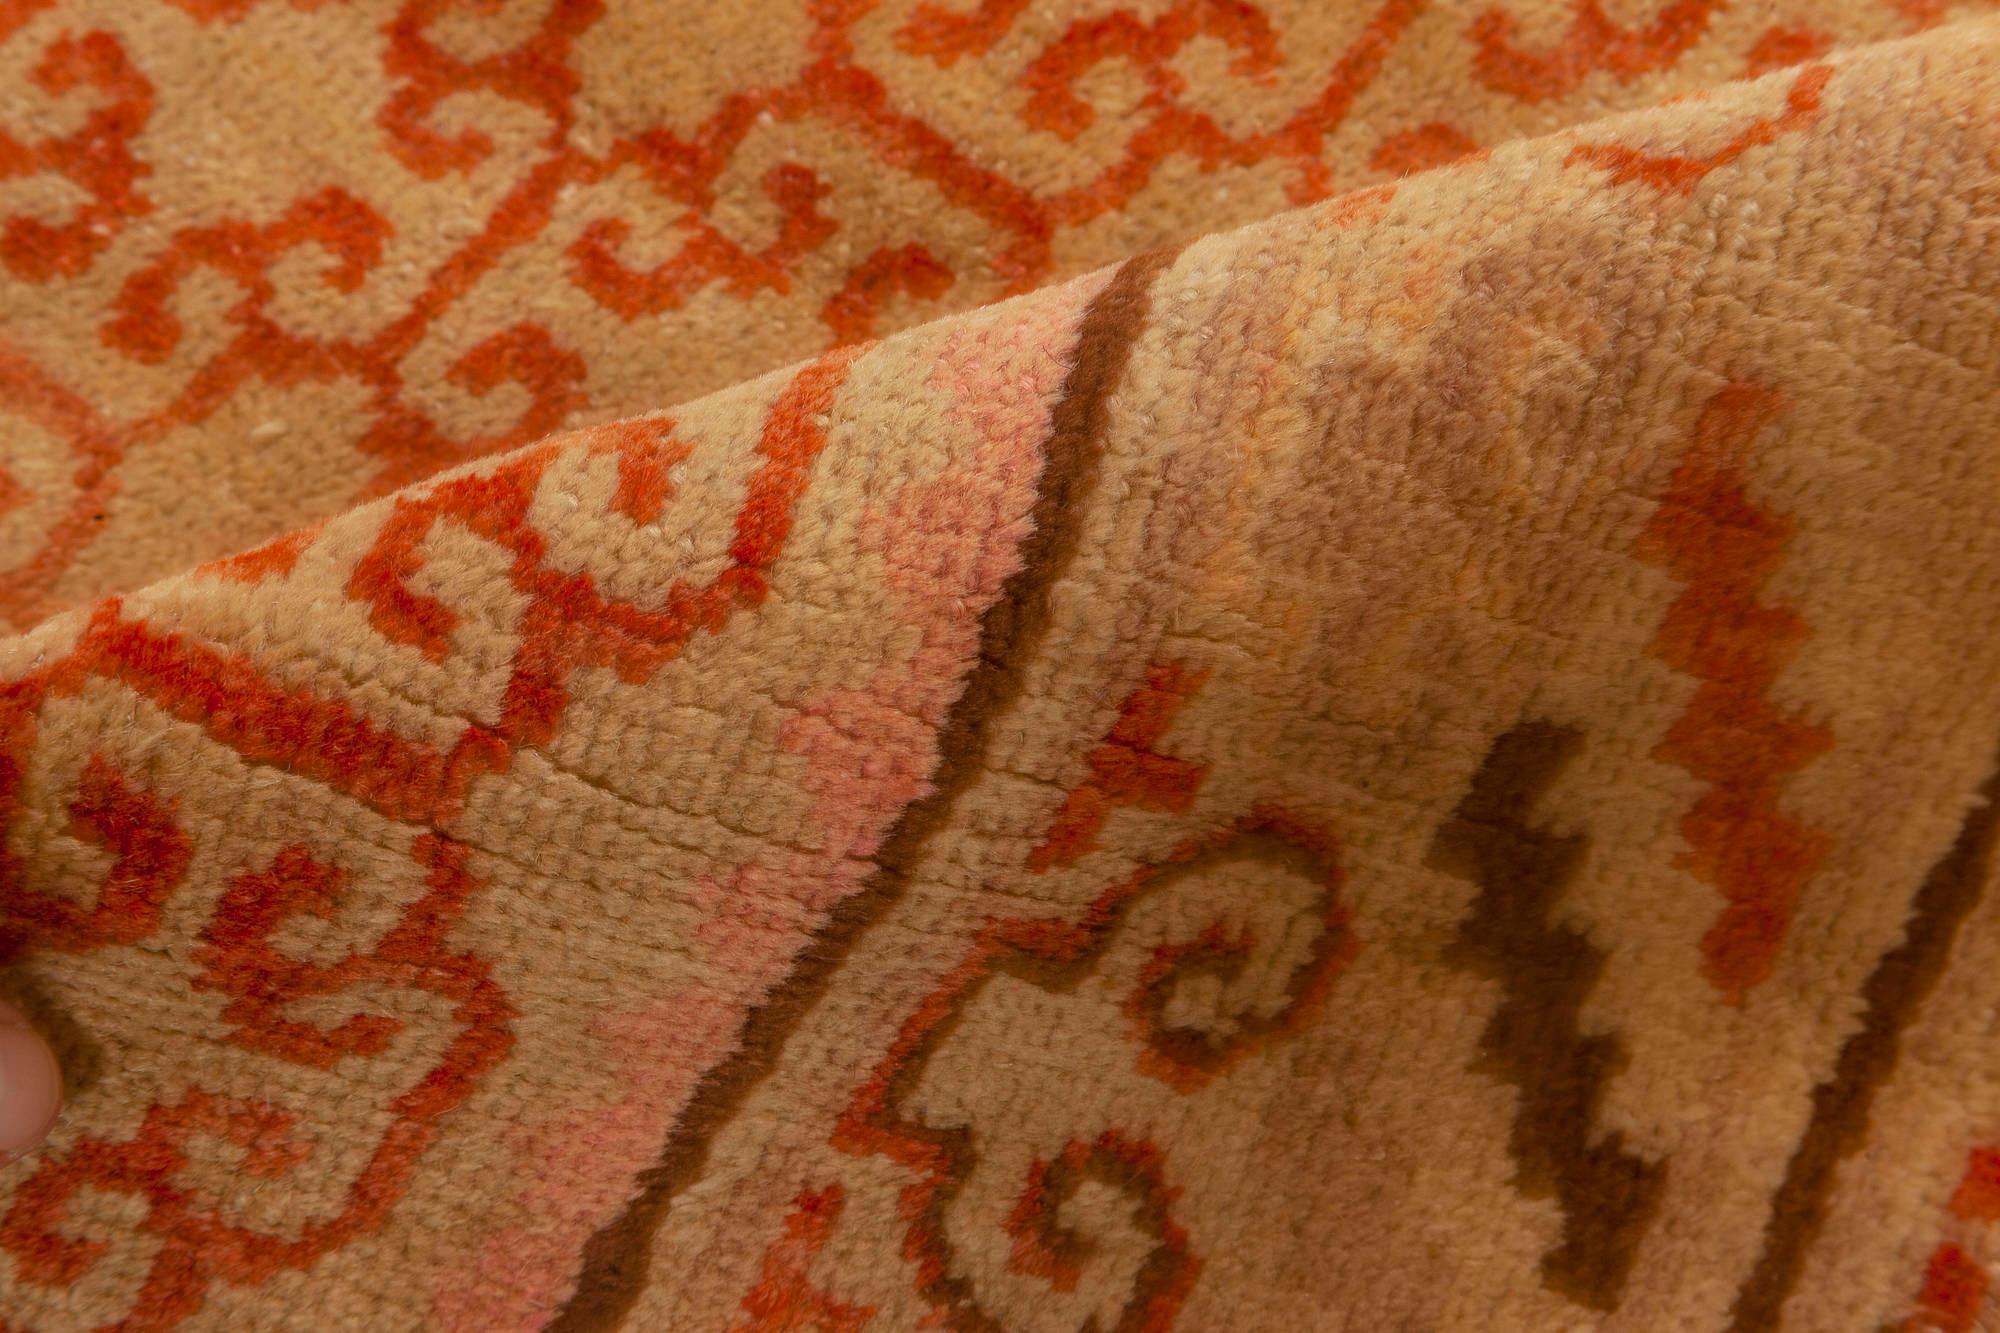 Samarkand-Teppich aus der Mitte des Jahrhunderts, handgefertigt aus Wolle in sandigem Beige, Orange und Braun.
Größe: 3'9